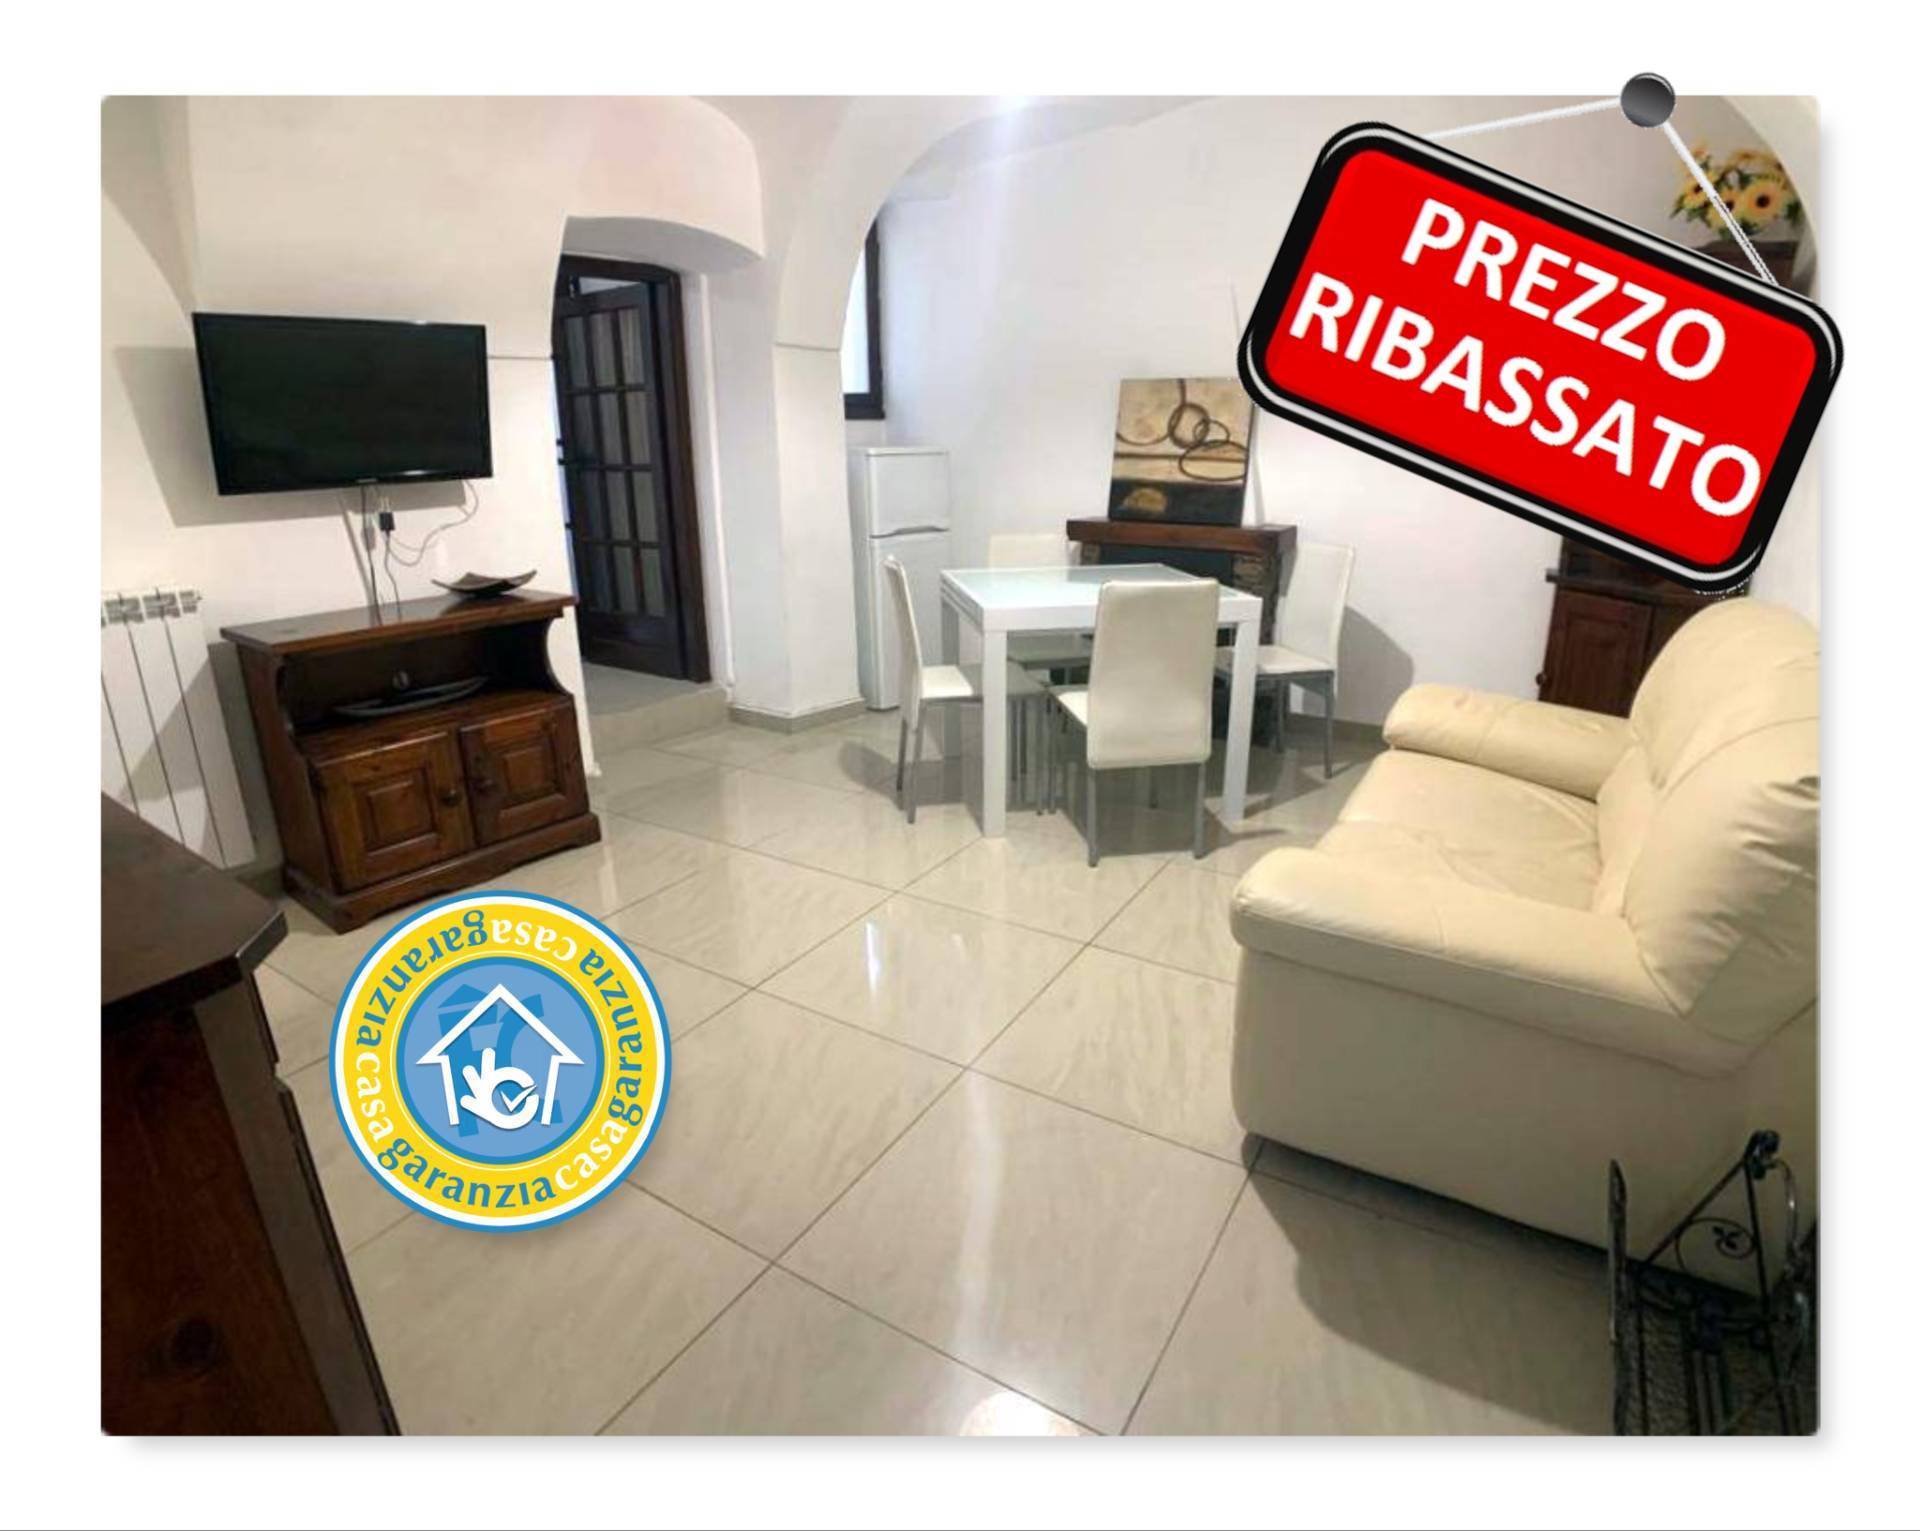 Appartamento in vendita a Dolceacqua, 2 locali, prezzo € 70.000 | PortaleAgenzieImmobiliari.it